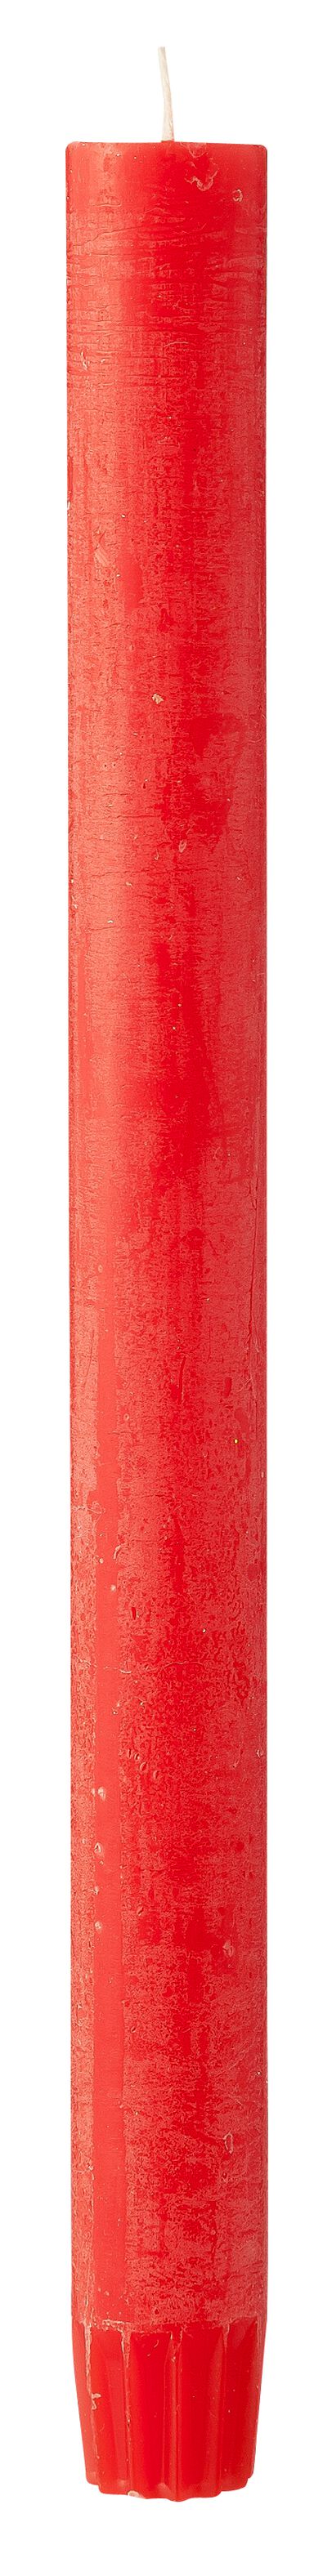 lange rustikale Kerze, 2,2 x 27 cm - 13503293 - HEMA